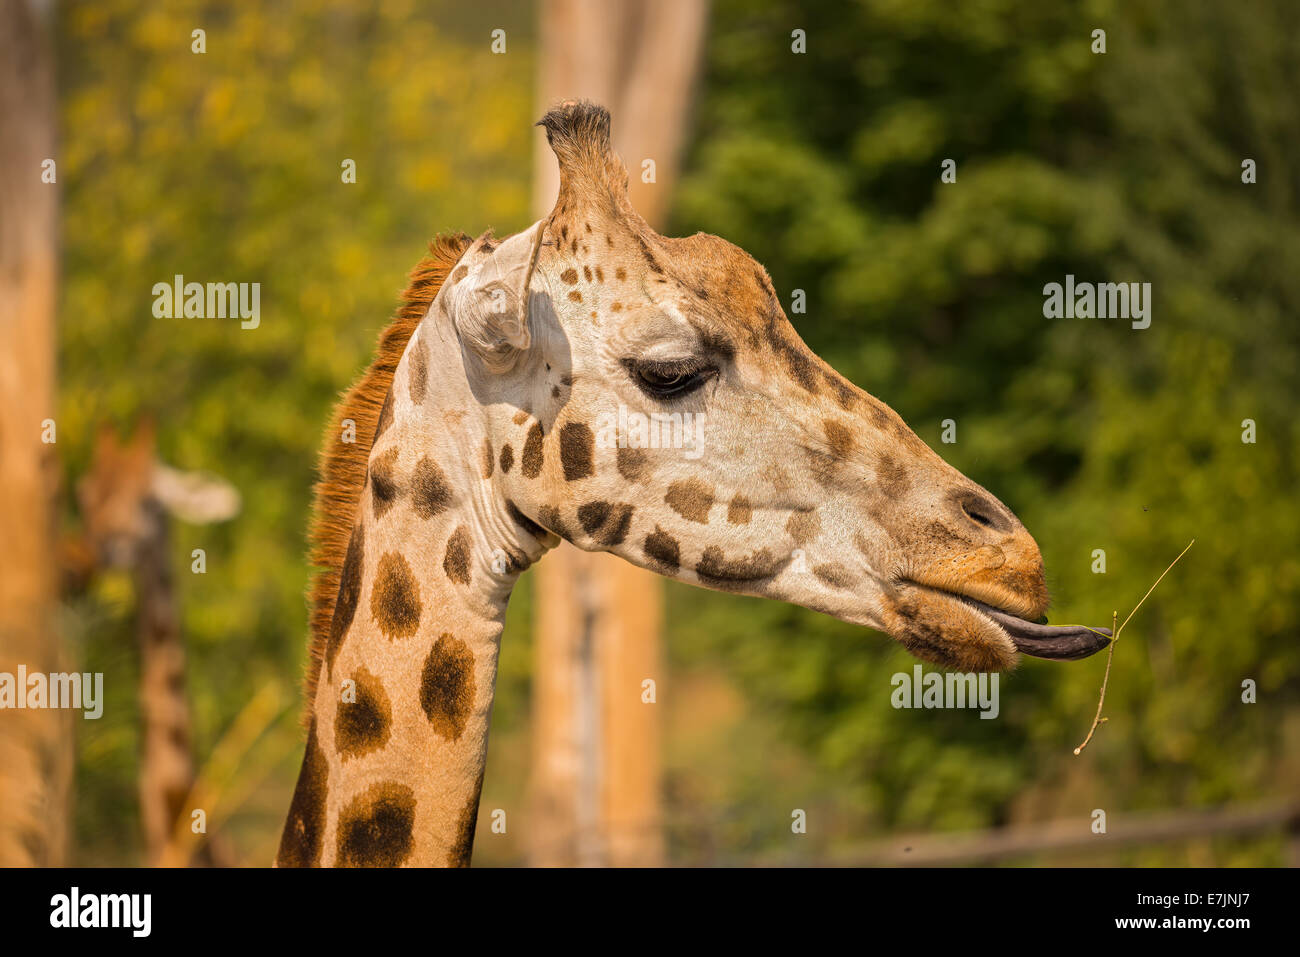 Closeup of a giraffe (Giraffa camelopardalis) eating grass Stock Photo